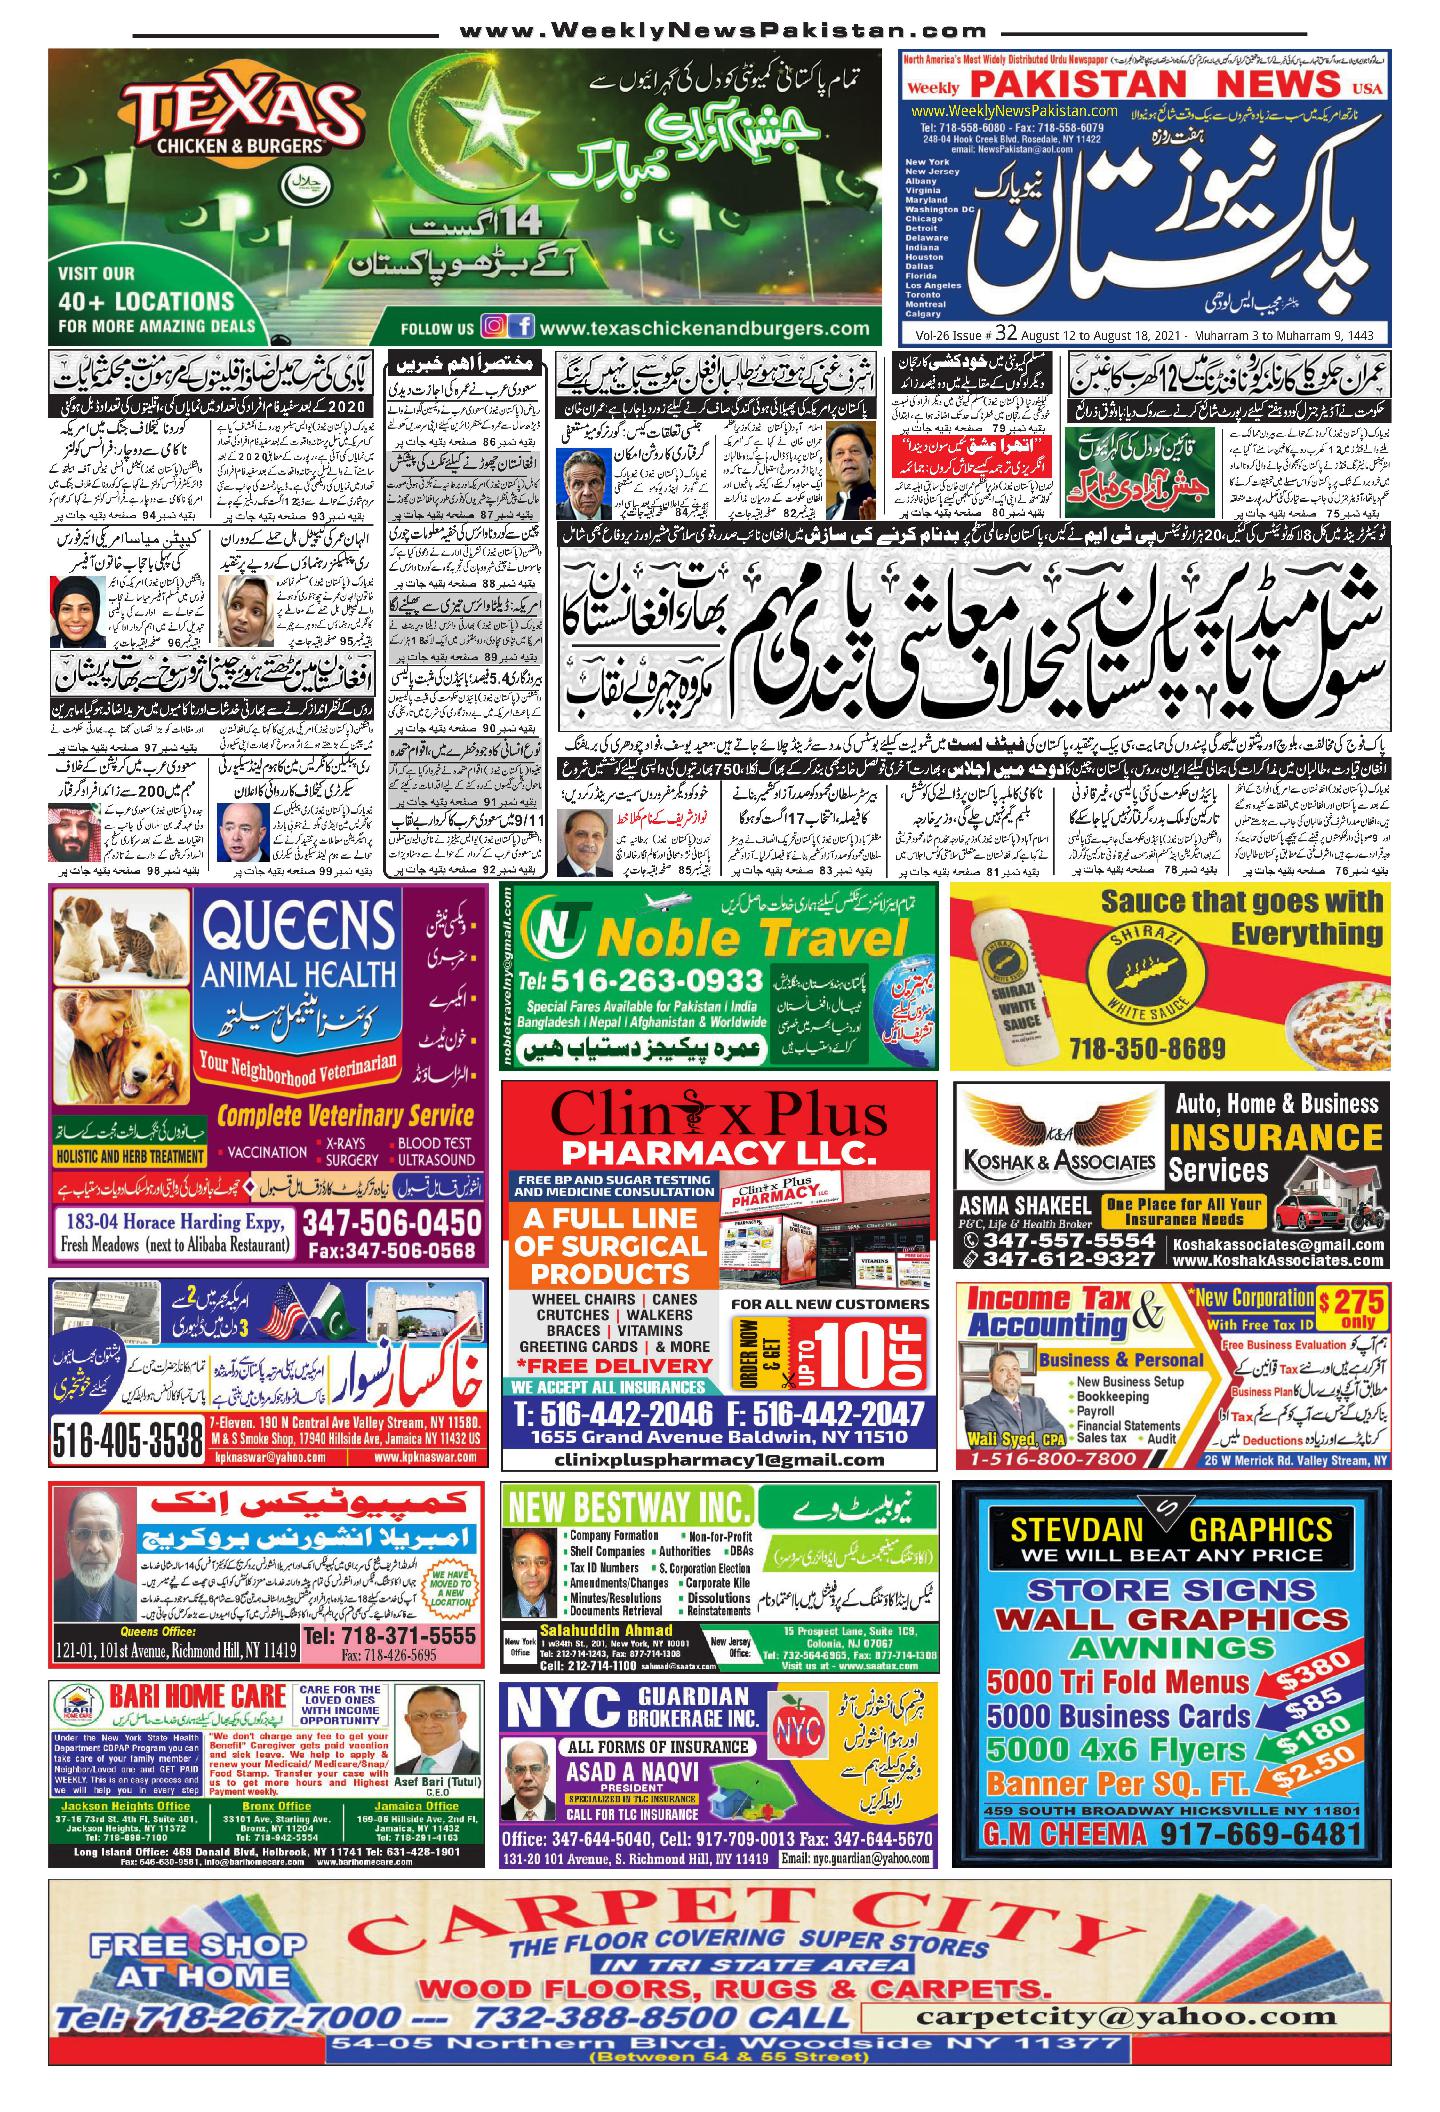 Weekly News Pakistan Group of Newspaper The Largest Urdu Newspaper in